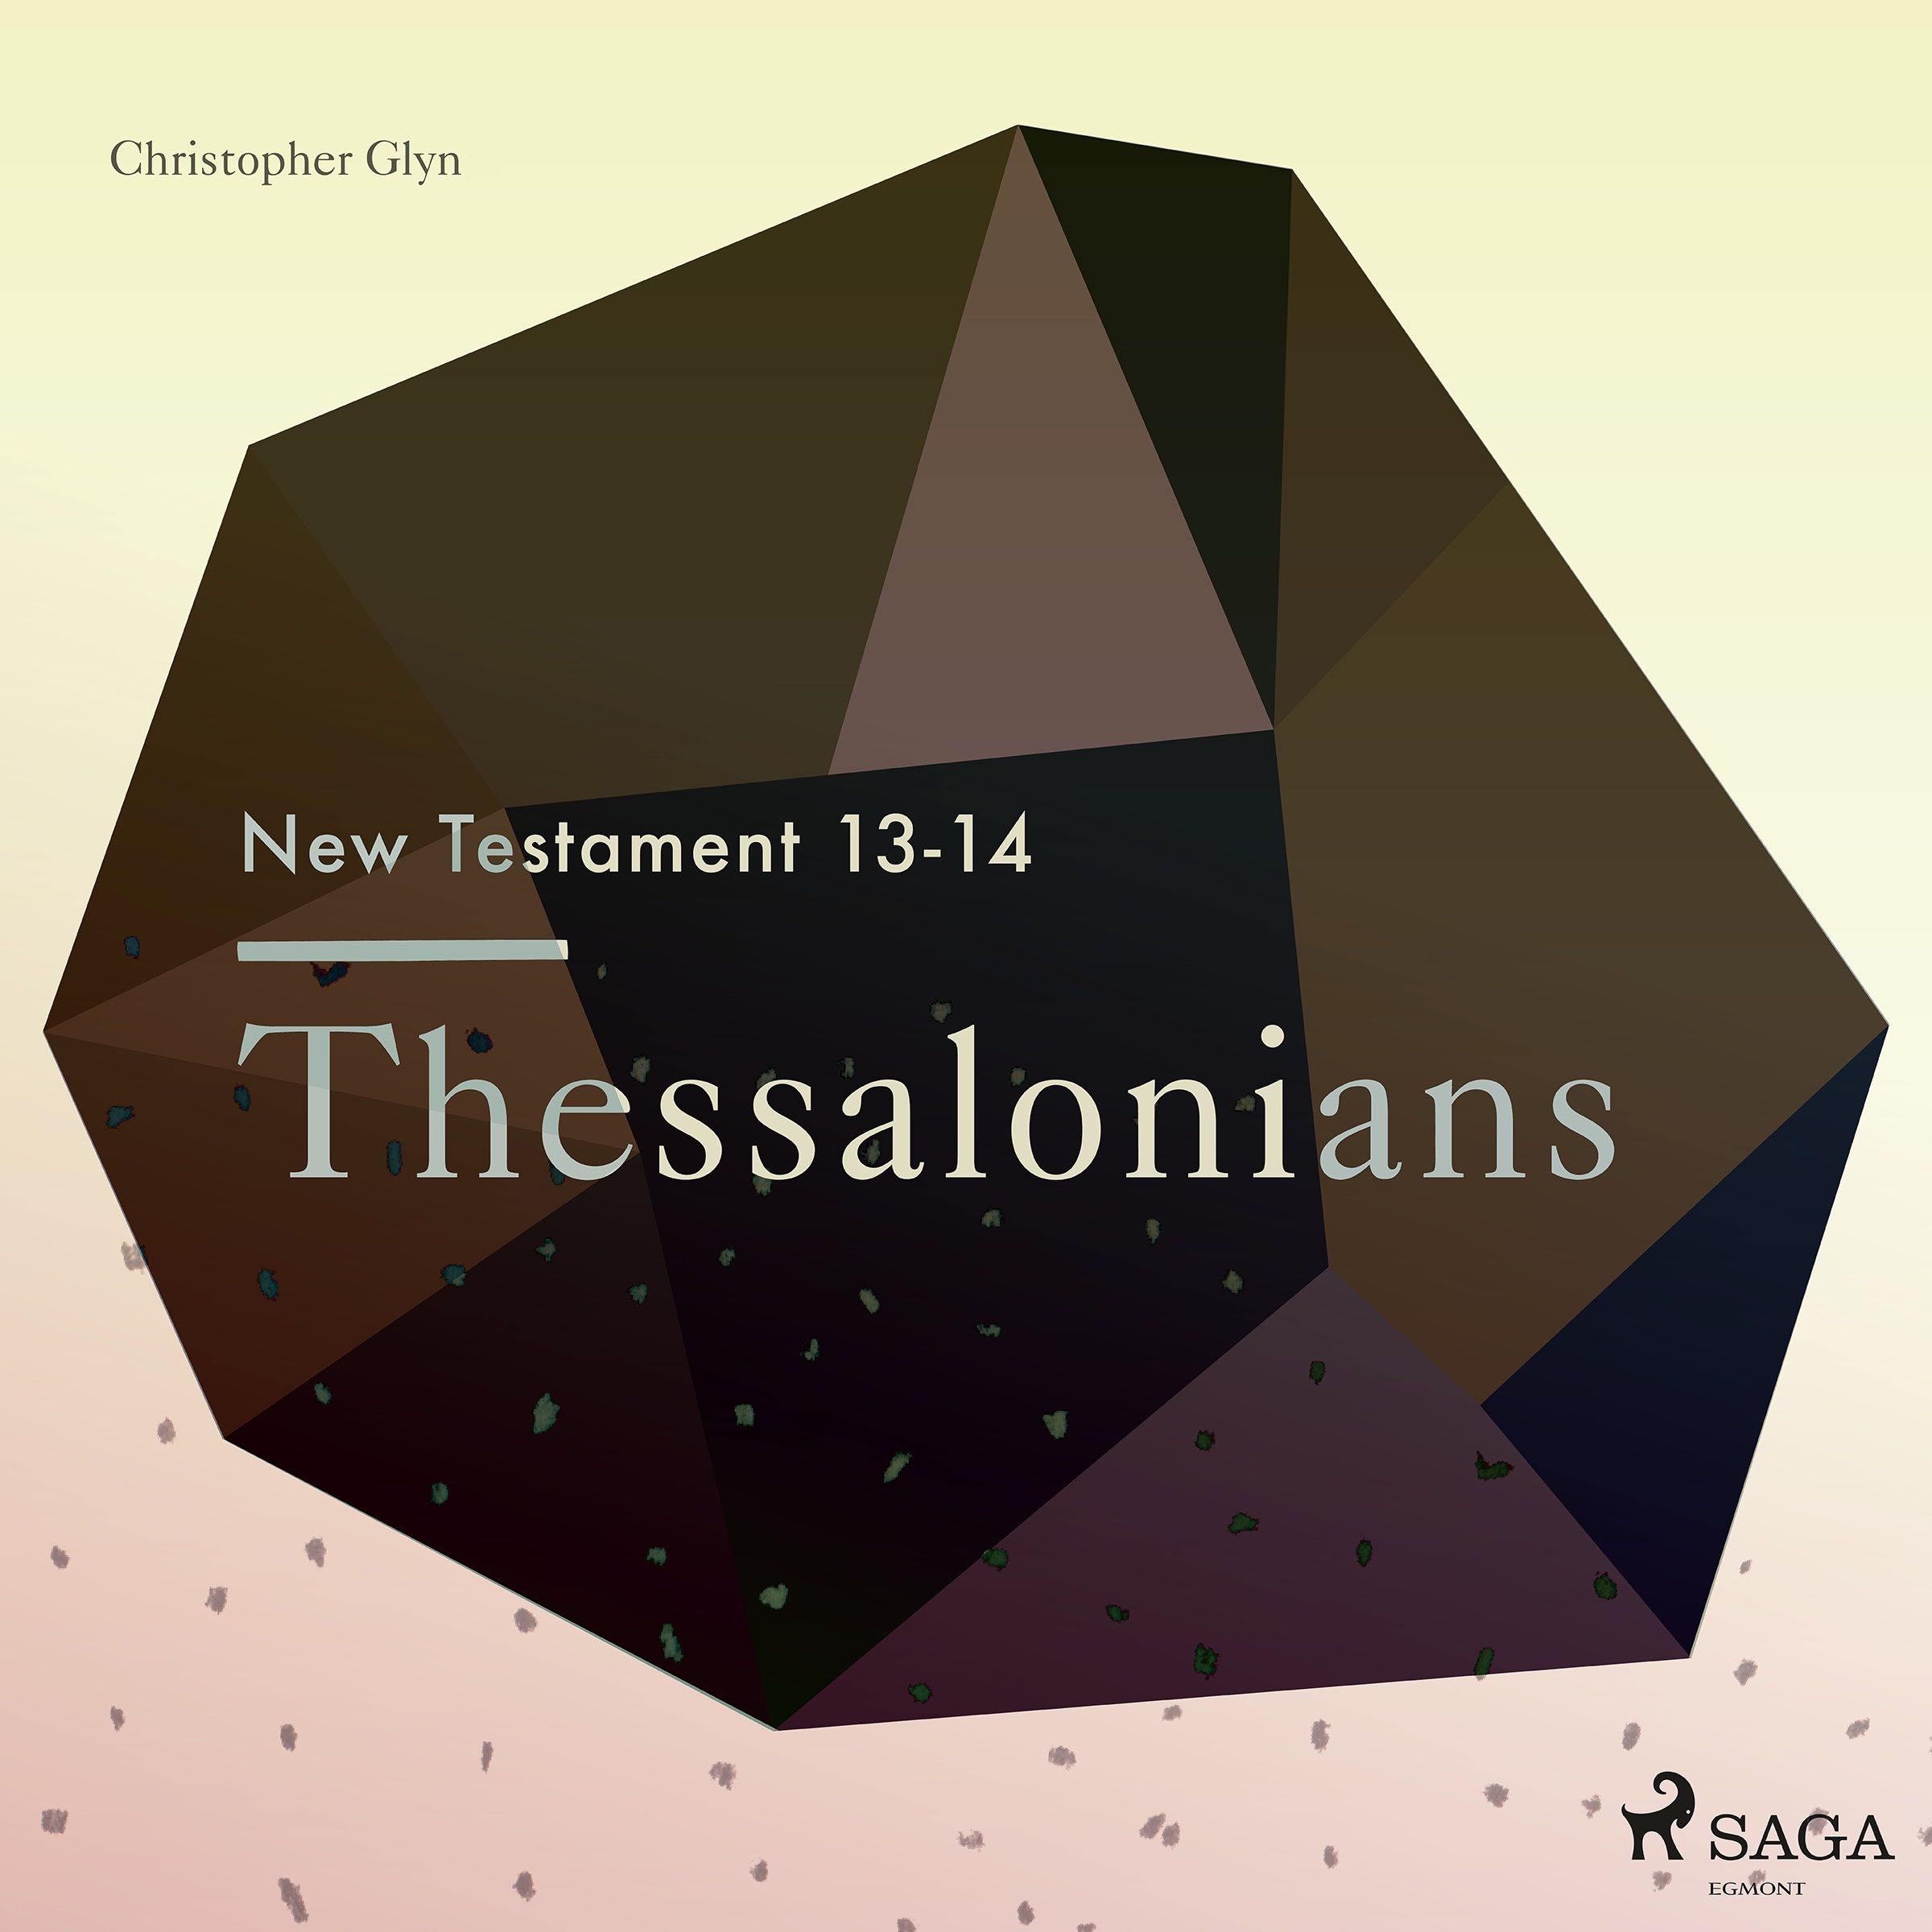 The New Testament 13-14 - Thessalonians, ljudbok av Christopher Glyn